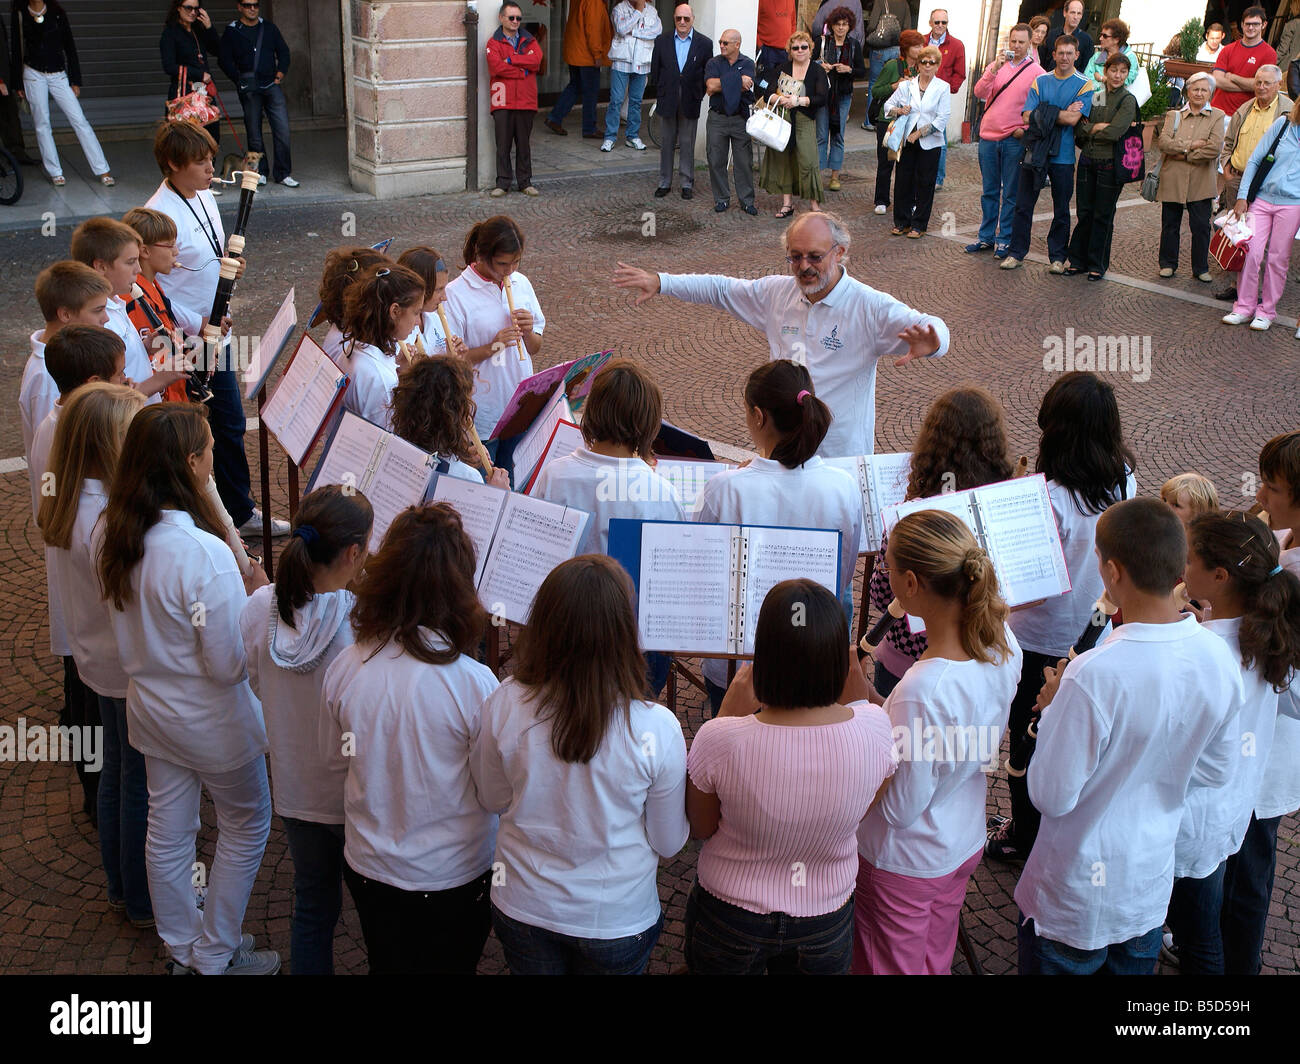 Banda per bambini presso la piazza principale del Portoruaro - La città del nord Italia, vicino a Venezia. Domenica pomeriggio. Concerto pubblico. Foto Stock